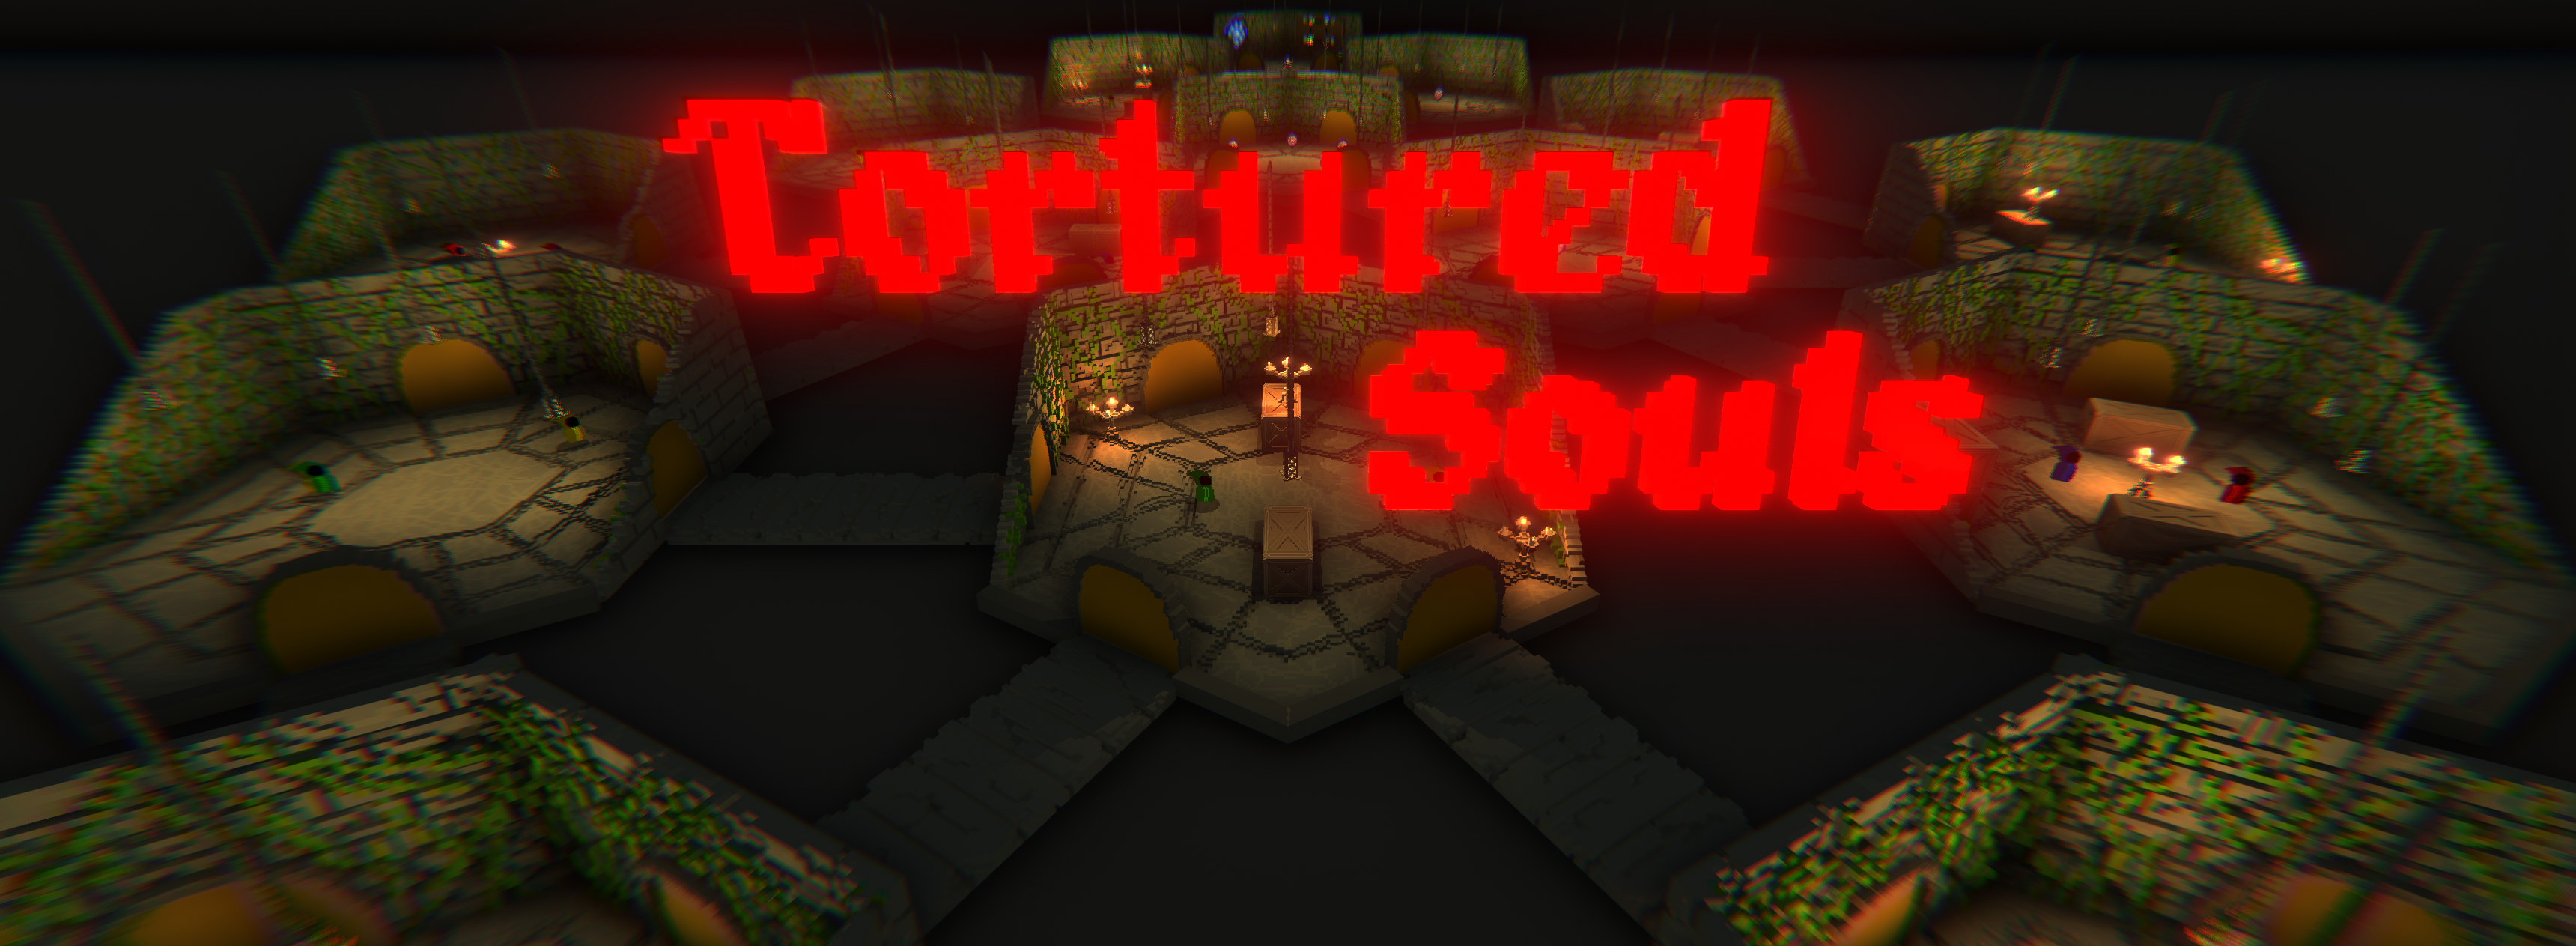 Tortured Souls - Group